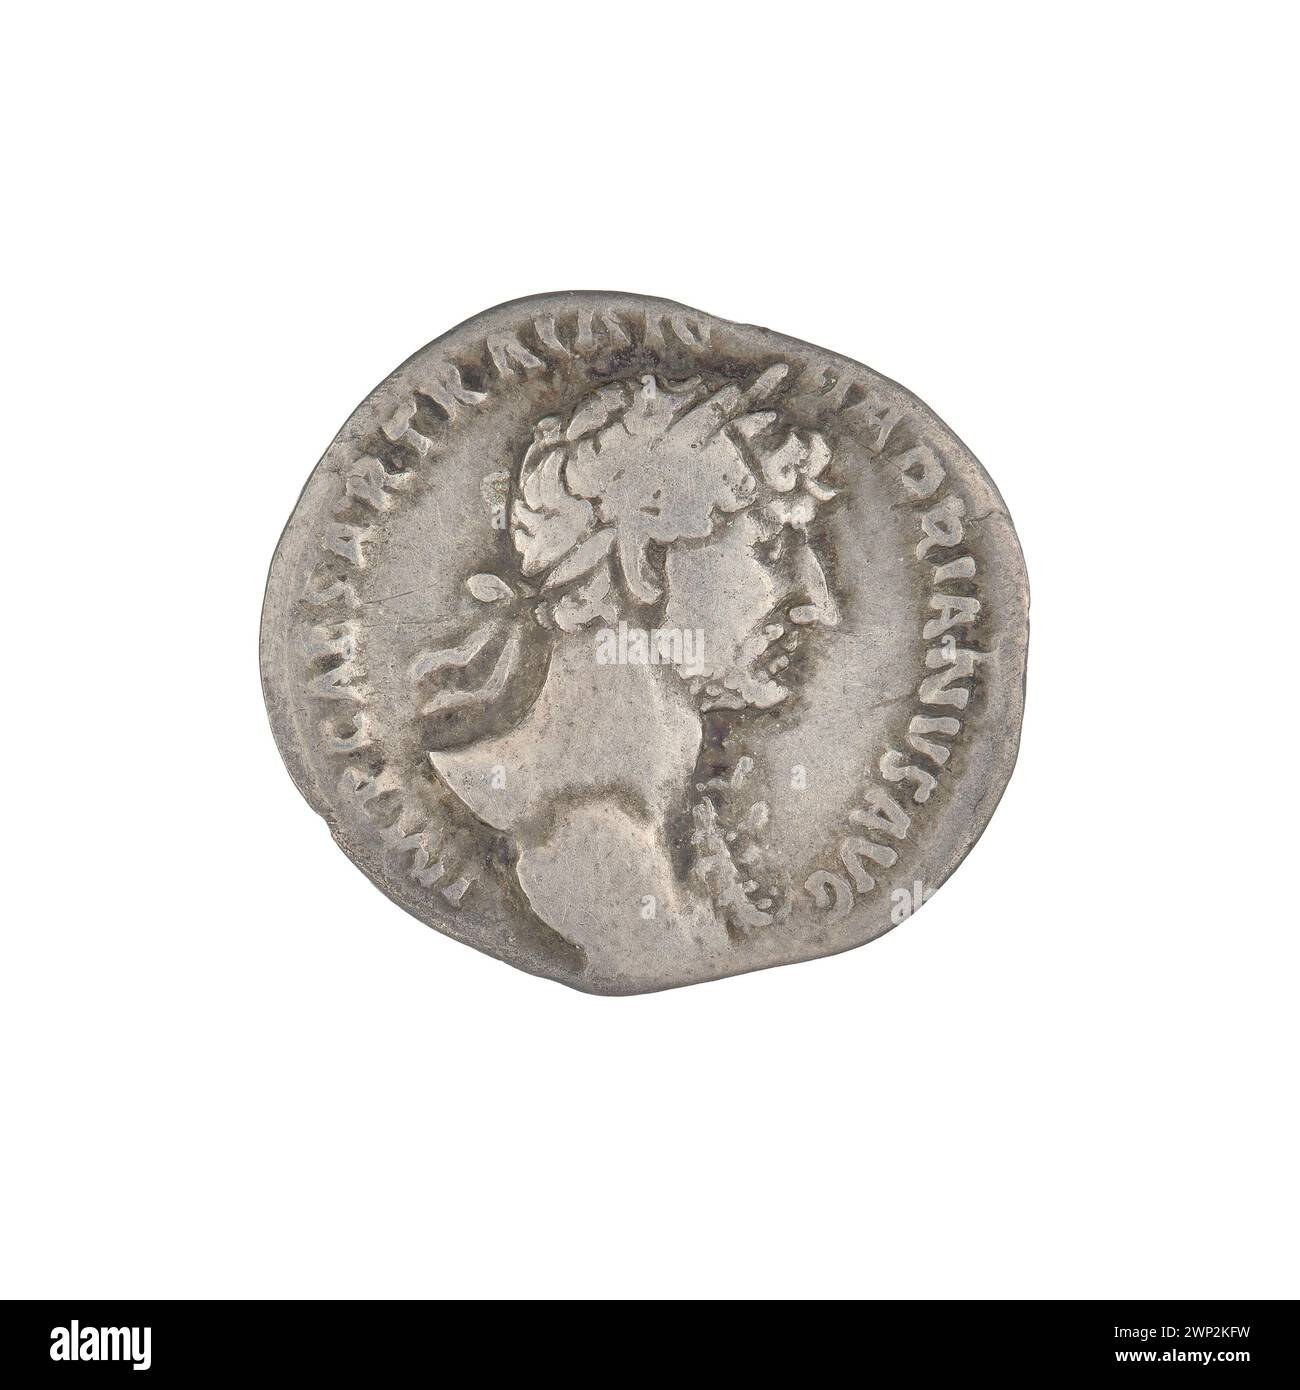 denarius; Hadrian (76-138; Roman emperor 117-138); 118 (114-00-00-117-00-00);PAX (personification), branches, busts, laurel wreaths Stock Photo